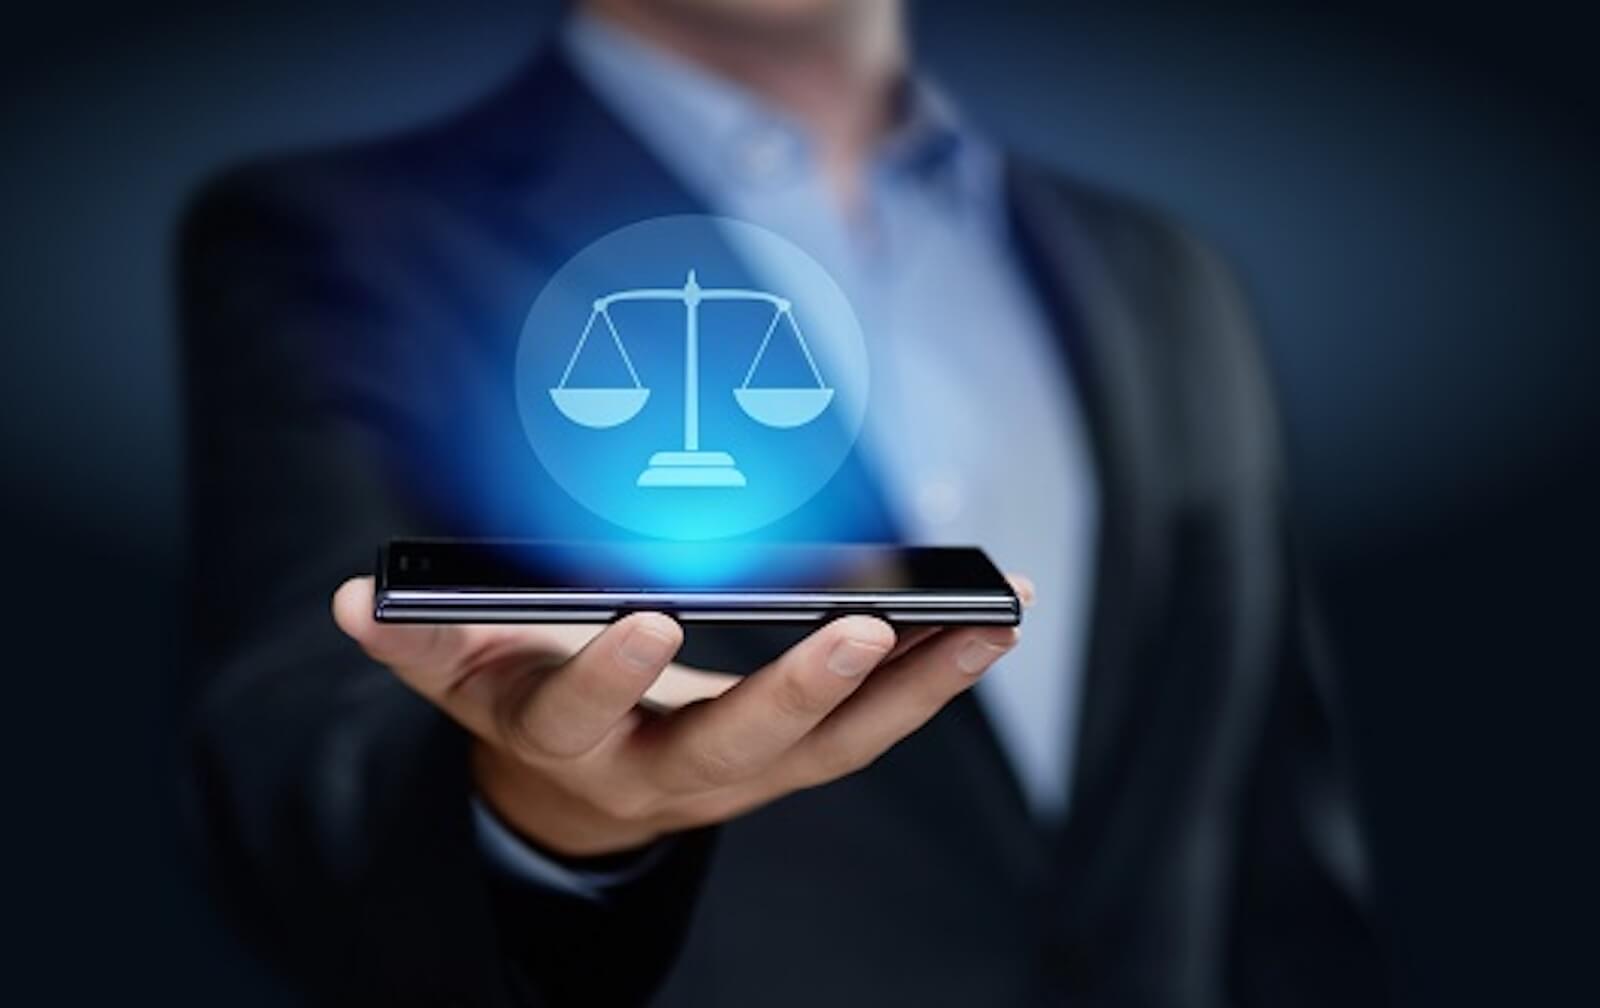 Escritório digital: como ele está inovando o setor jurídico?